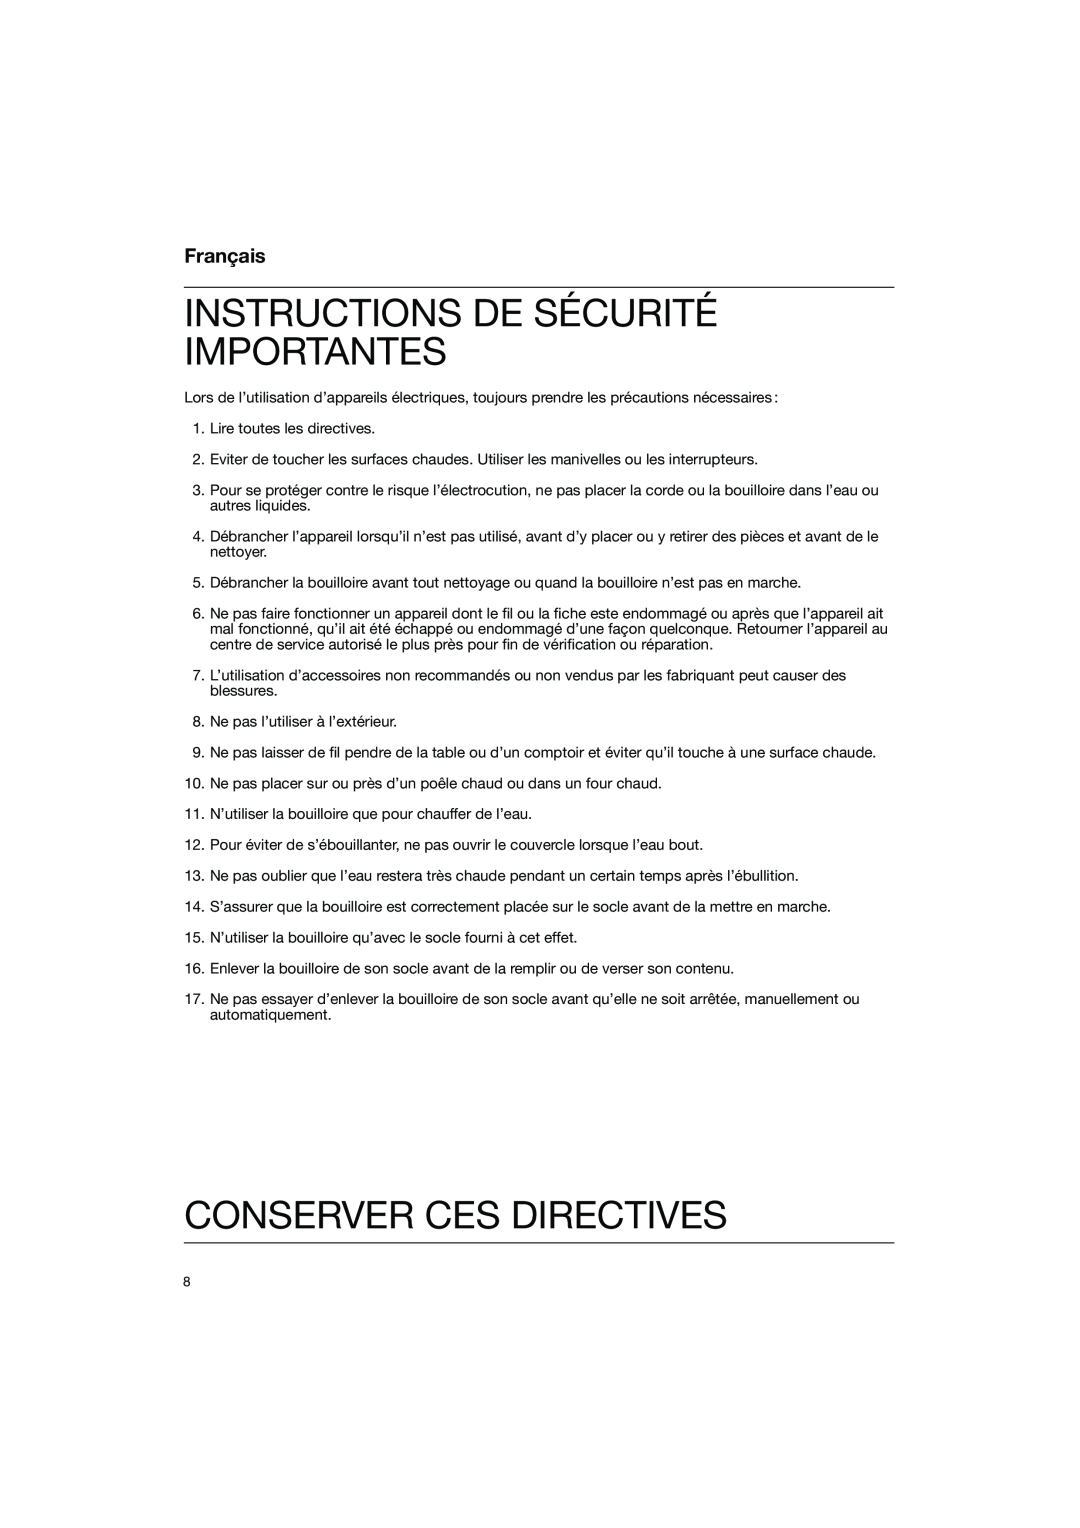 Braun WK 600 manual Instructions De Sécurité Importantes, Conserver Ces Directives, Français 